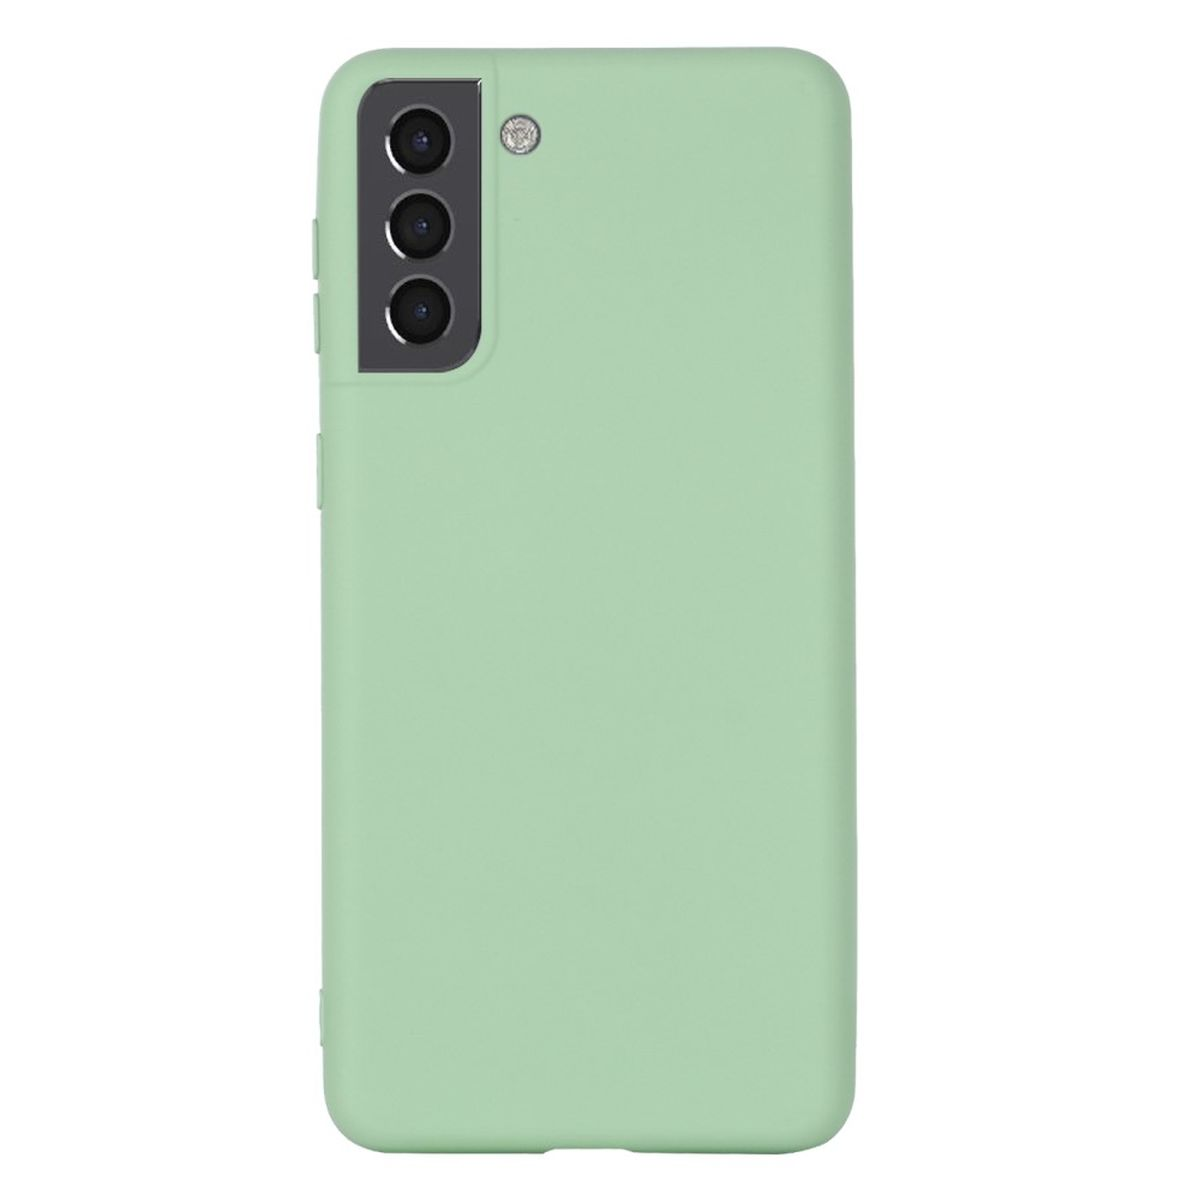 Handycase Galaxy 5G, Grün S22 COVERKINGZ Samsung, Silikon, aus Backcover,